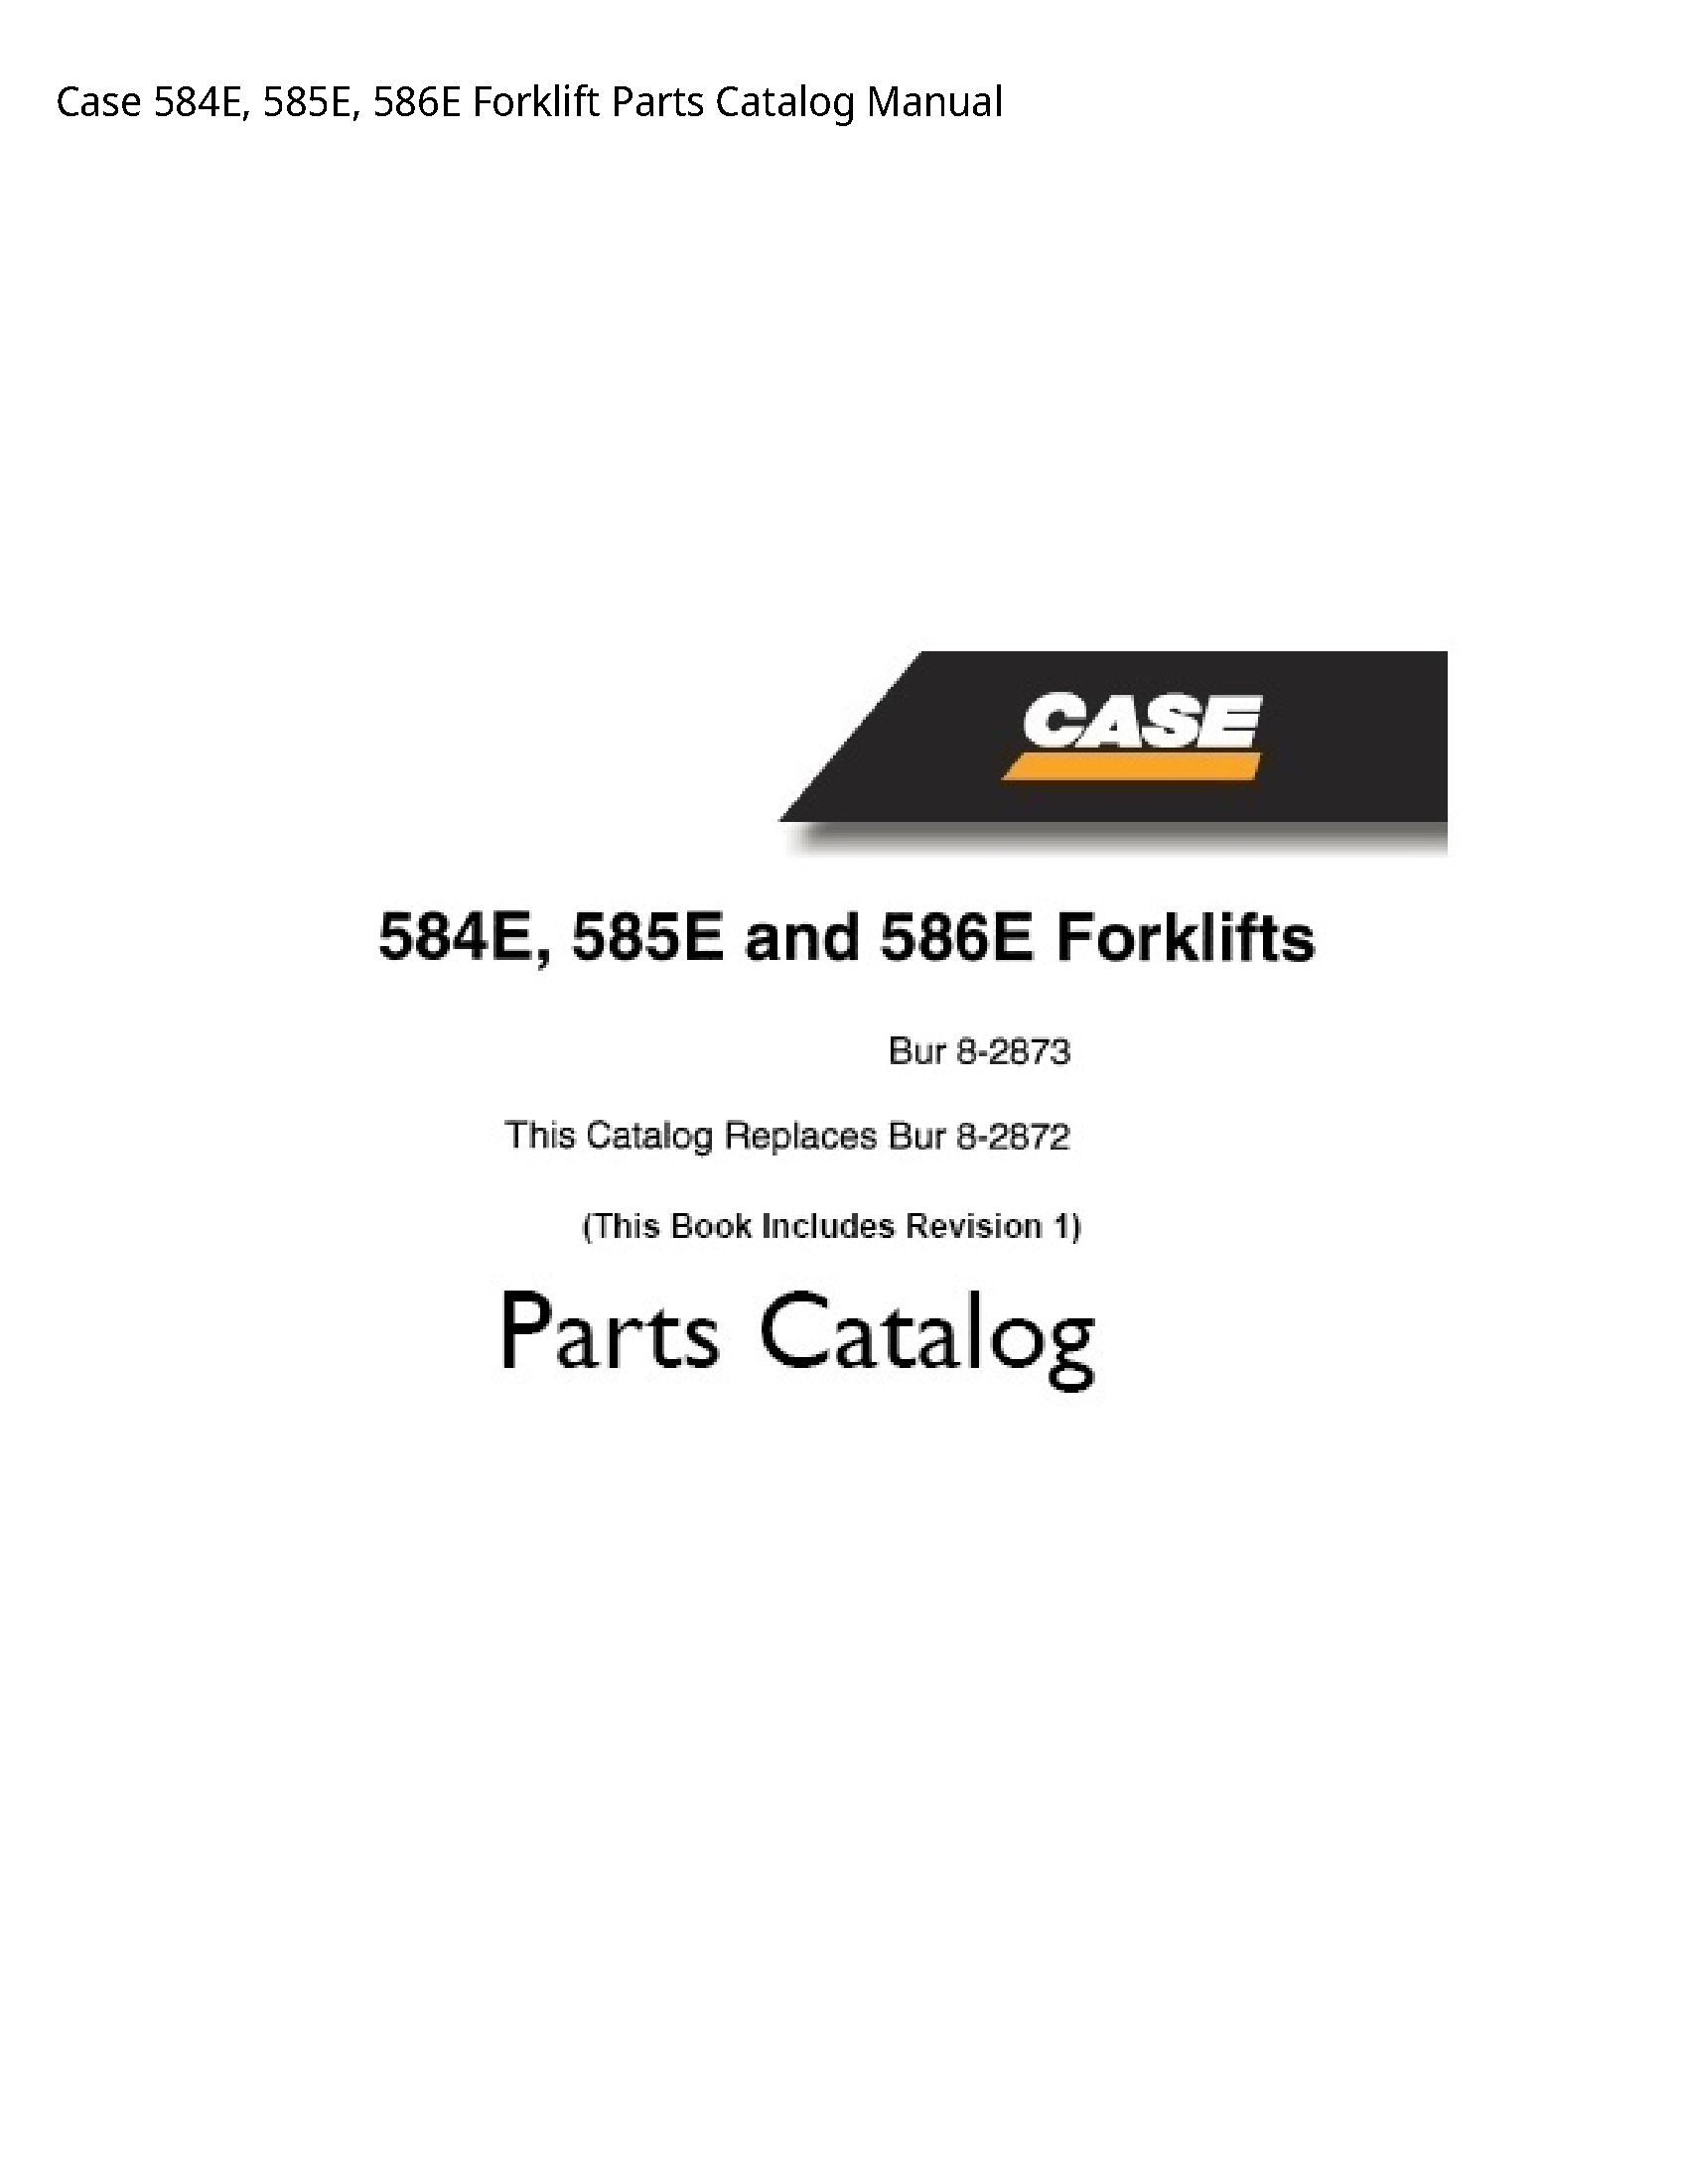 Case/Case IH 584E Forklift Parts Catalog manual